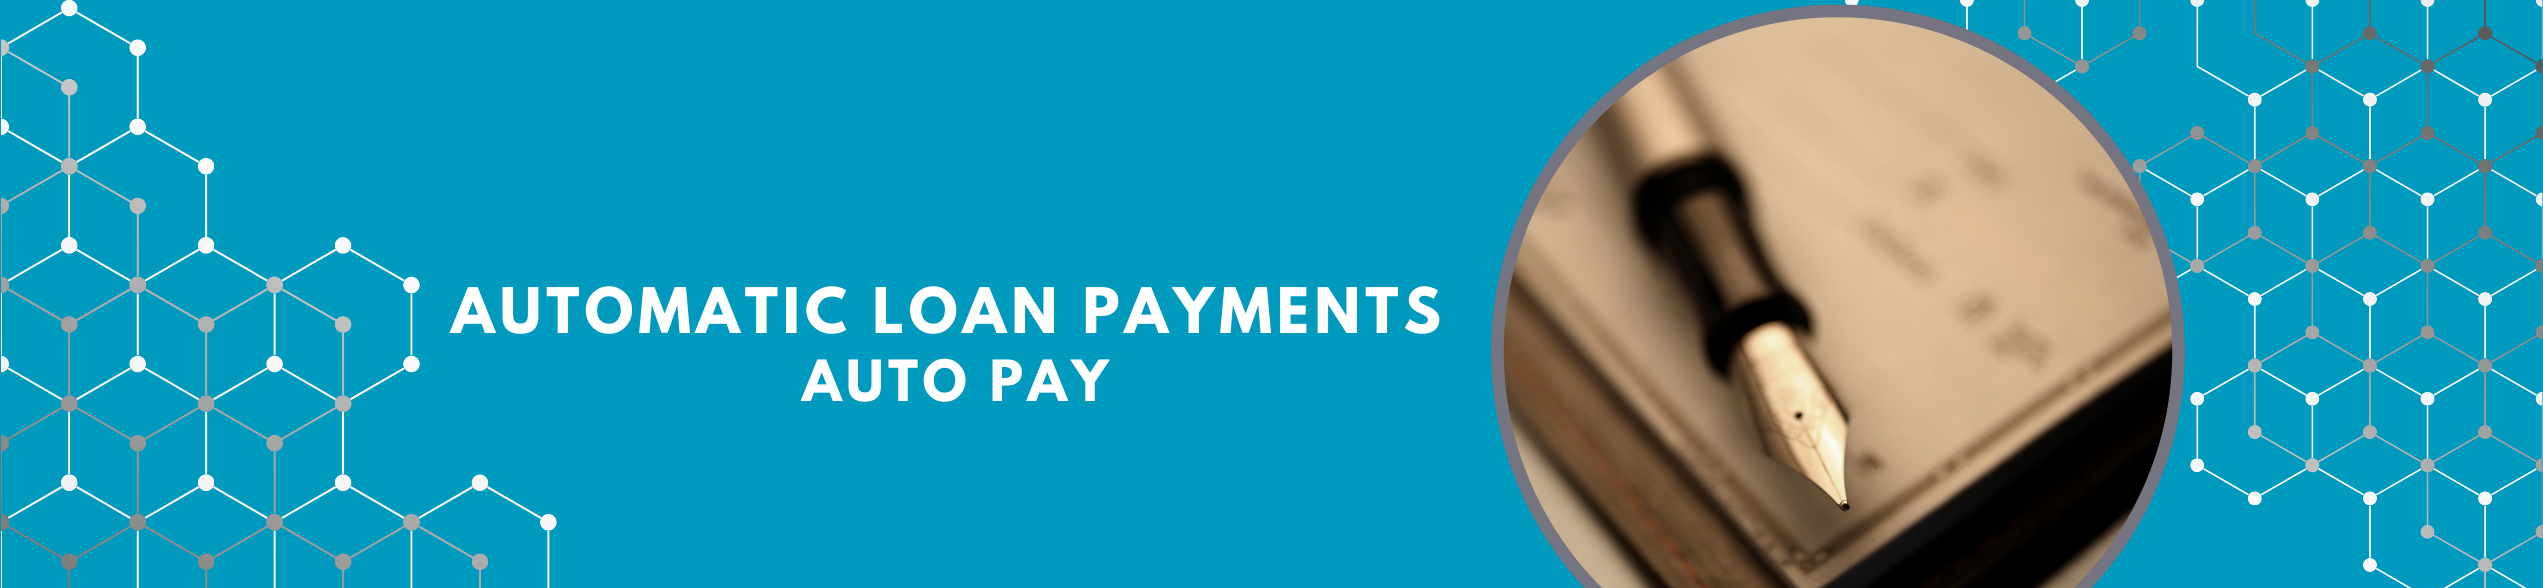 Automatic Loan Payments EZ Advantage Banner